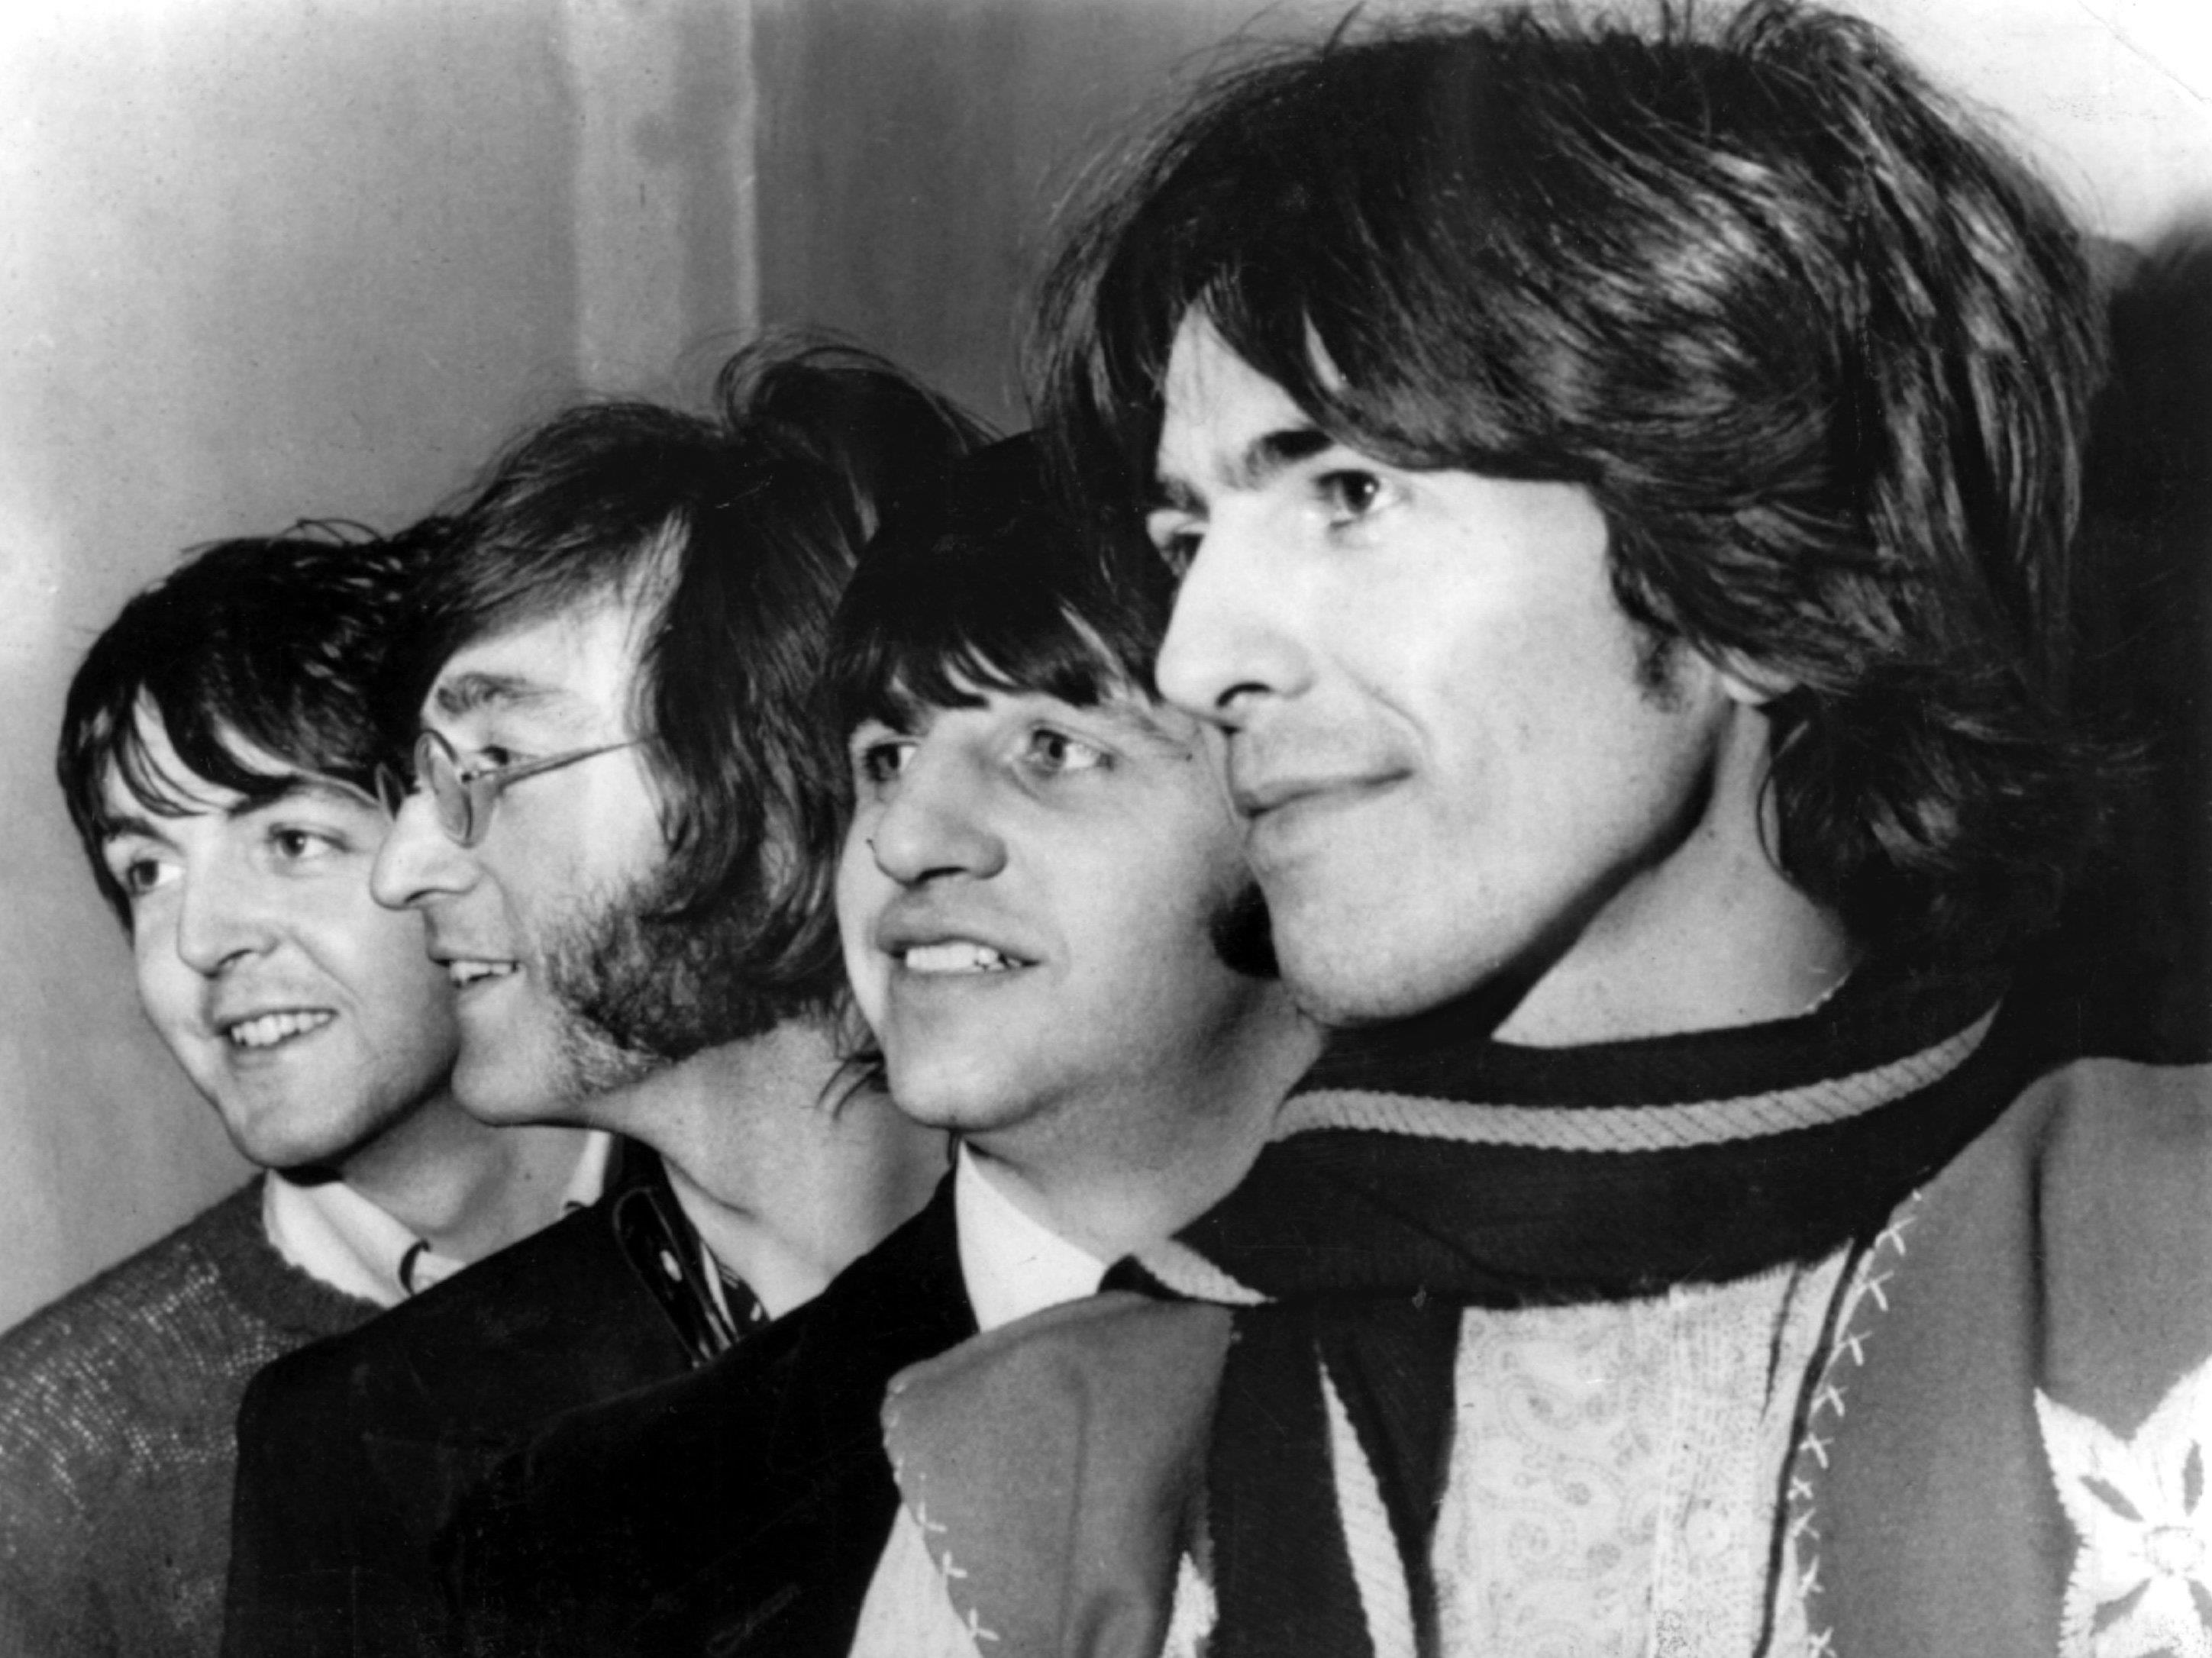 Am 5. Oktober 1962 kam die erste Beatles-Single "Love me Do" auf den Markt.